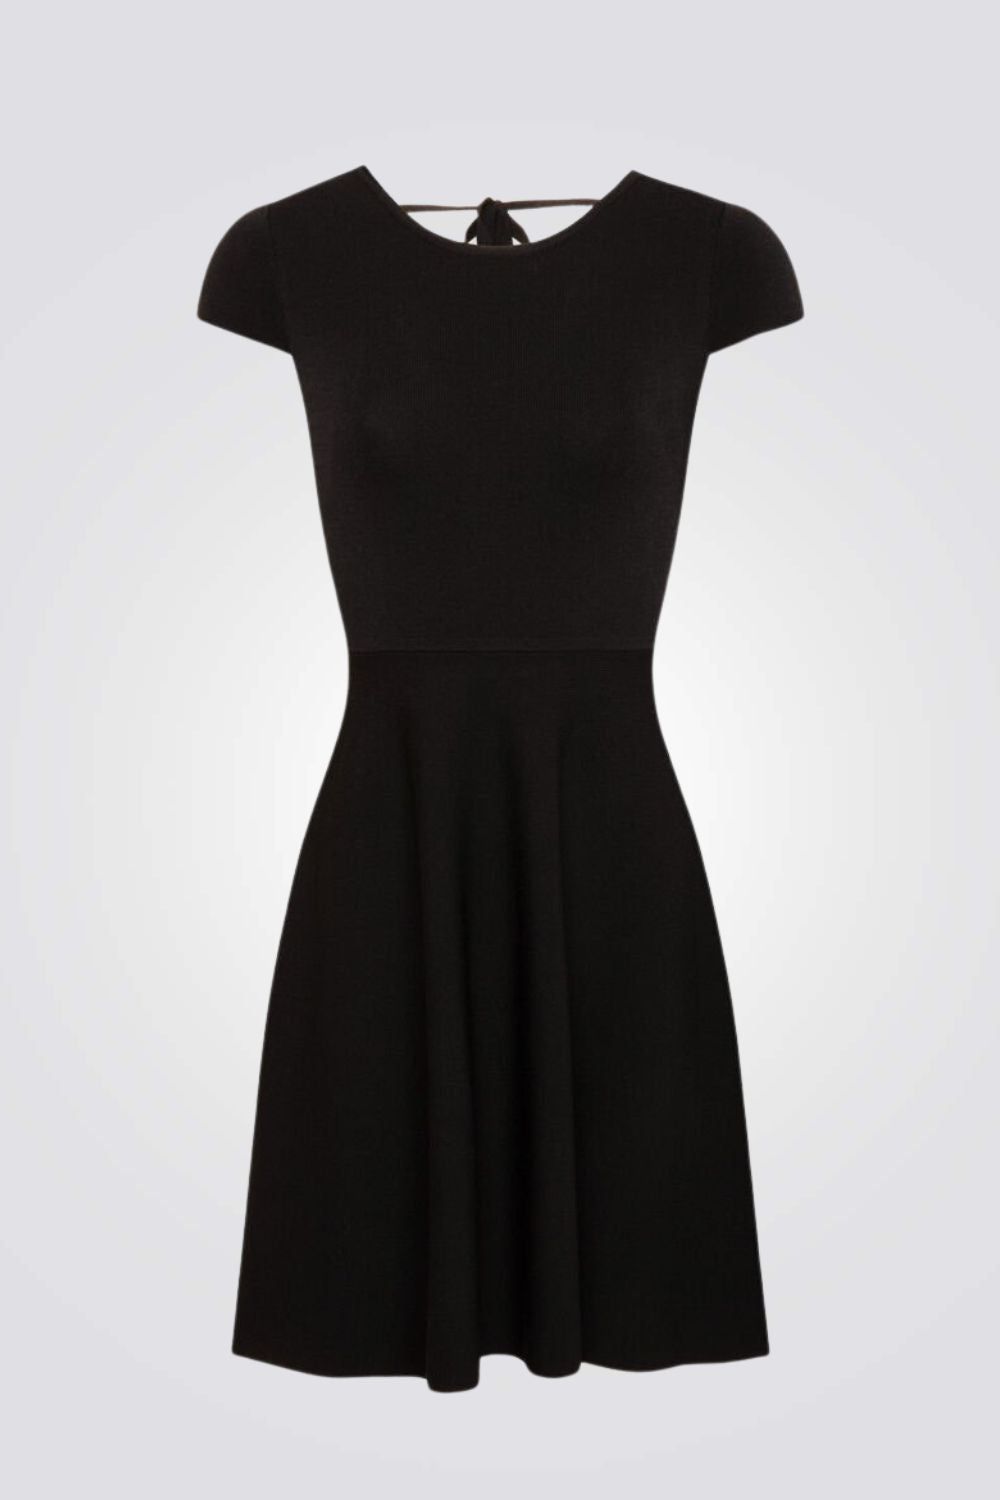 שמלה עם תחרה בצבע שחור